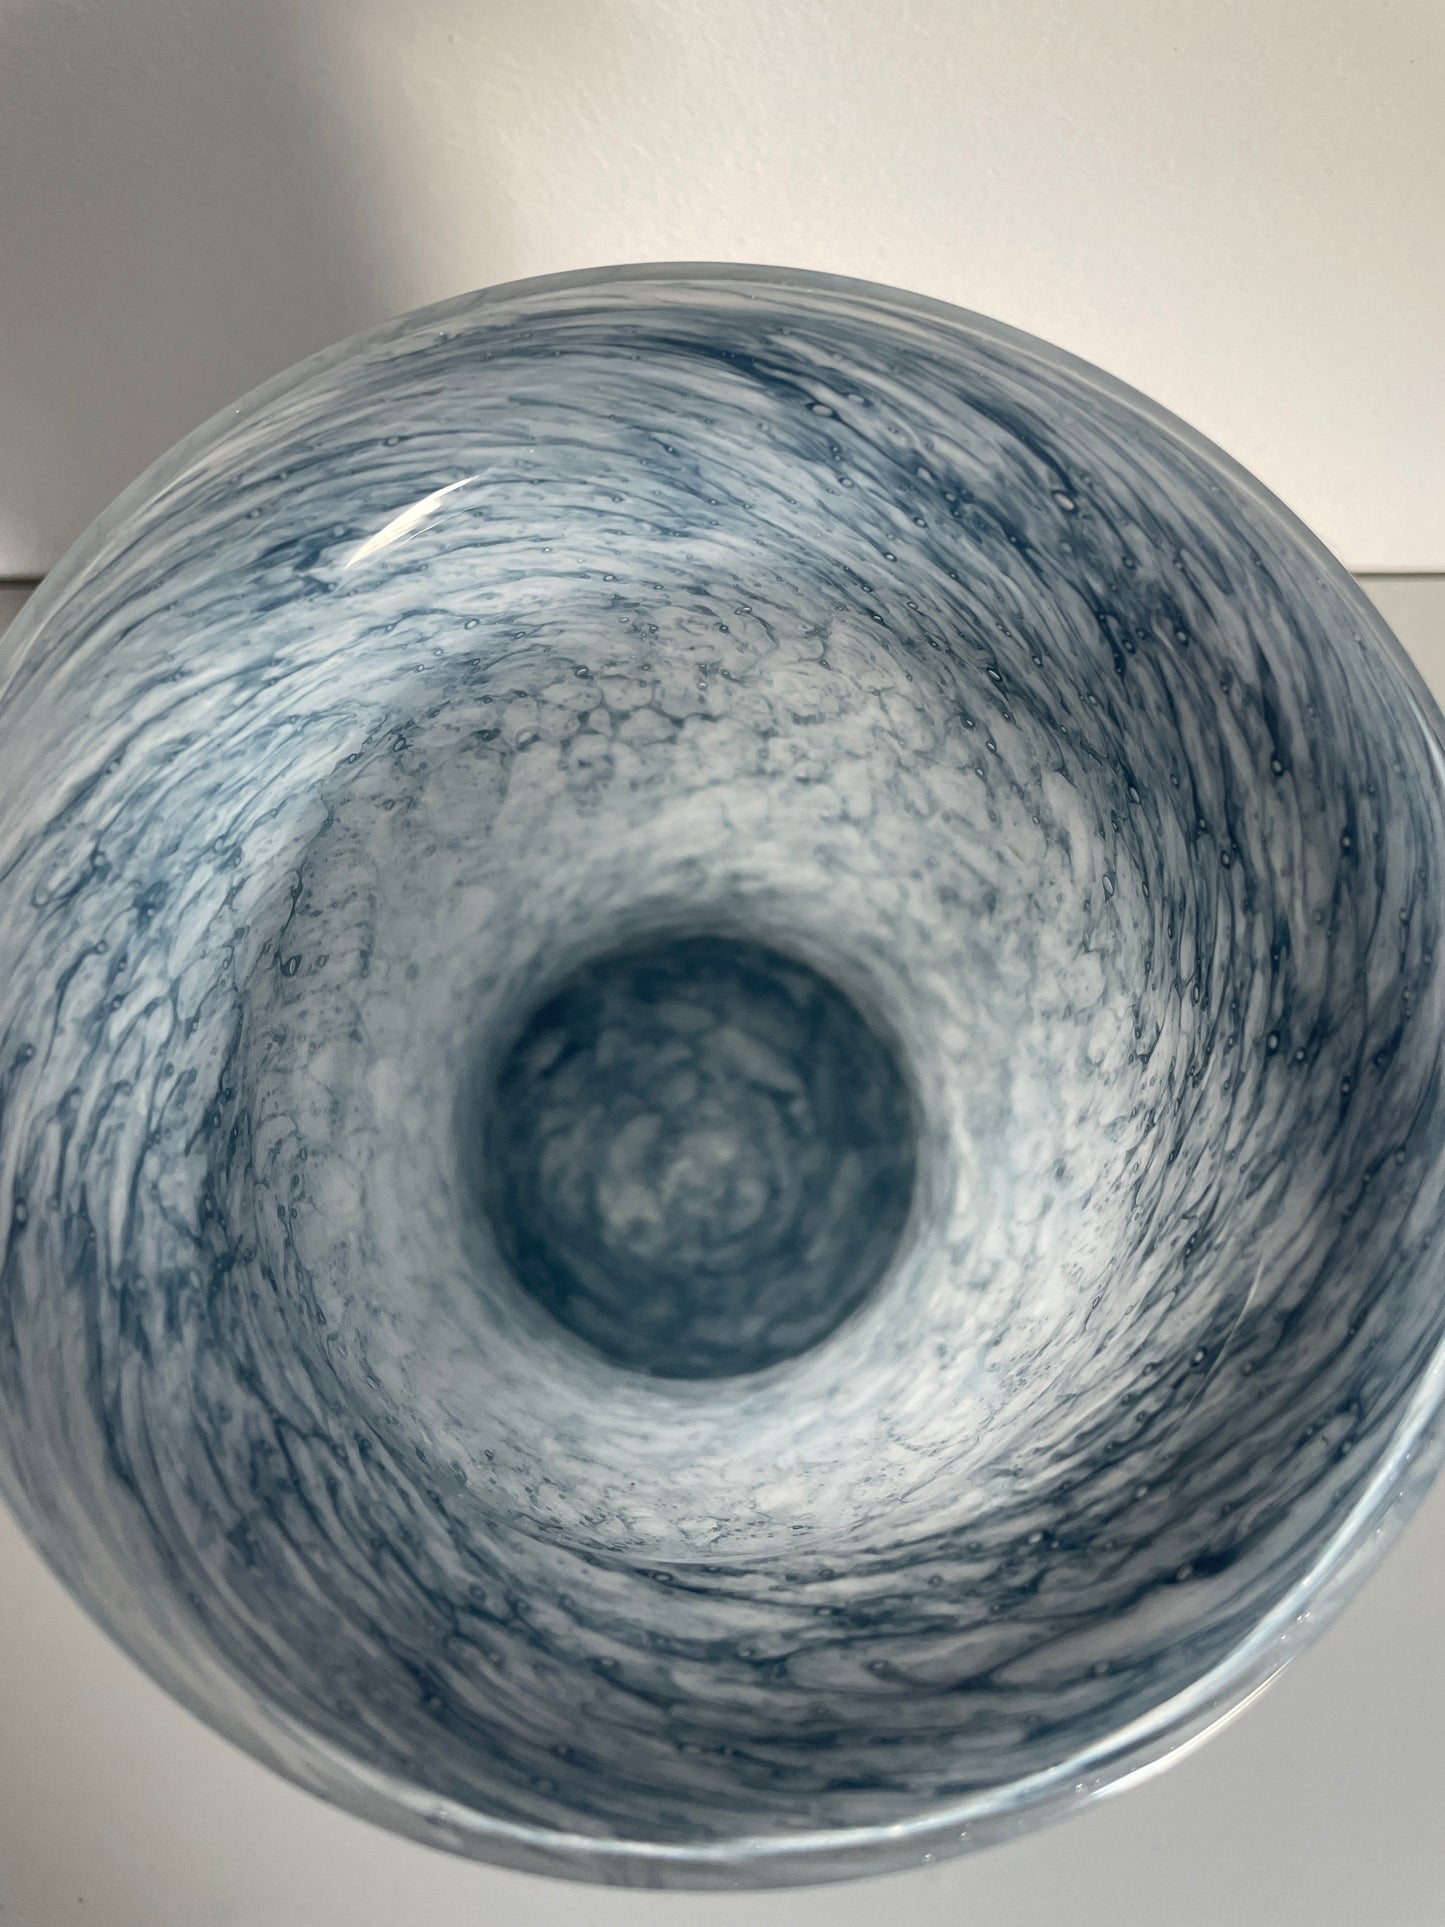 Grand vase en verre bleu effet marbré bleu intemporel - Les Ateliers de Minnie Valentine